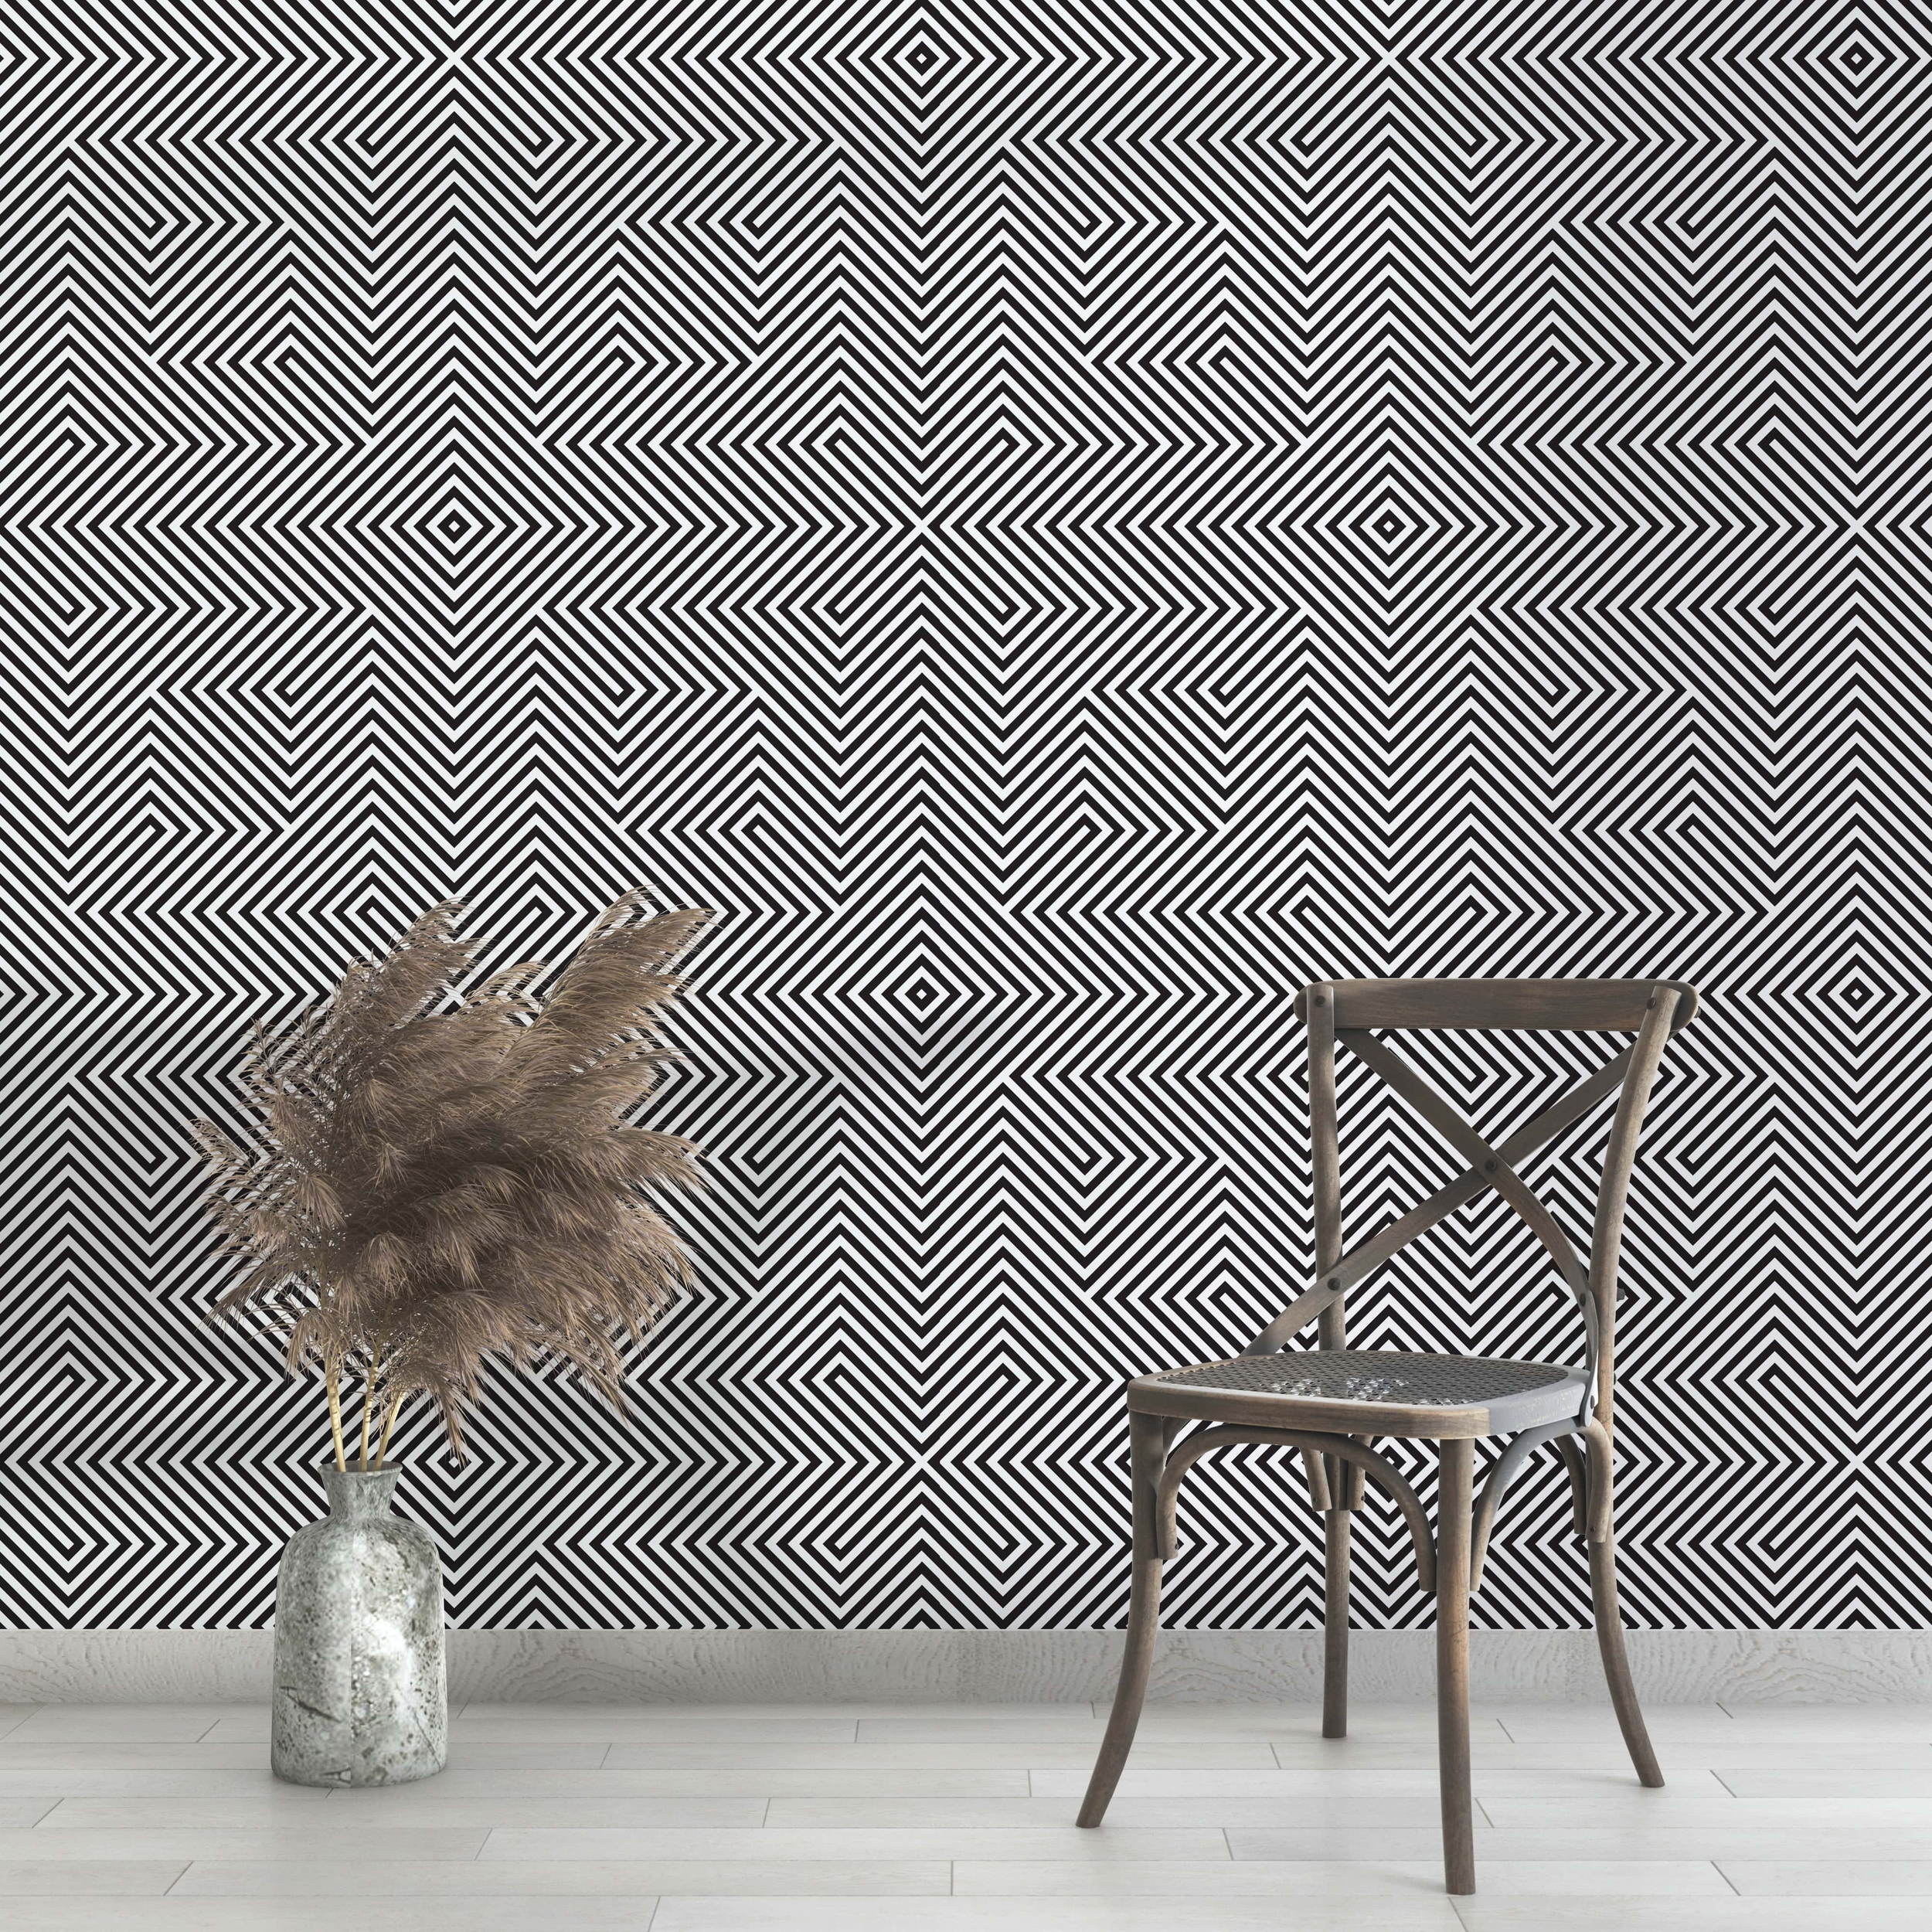 PP92-mur-papier-peint-adhesif-decoratif-revetement-vinyle-motifs-carré-optique-renovation-meuble-mur-min